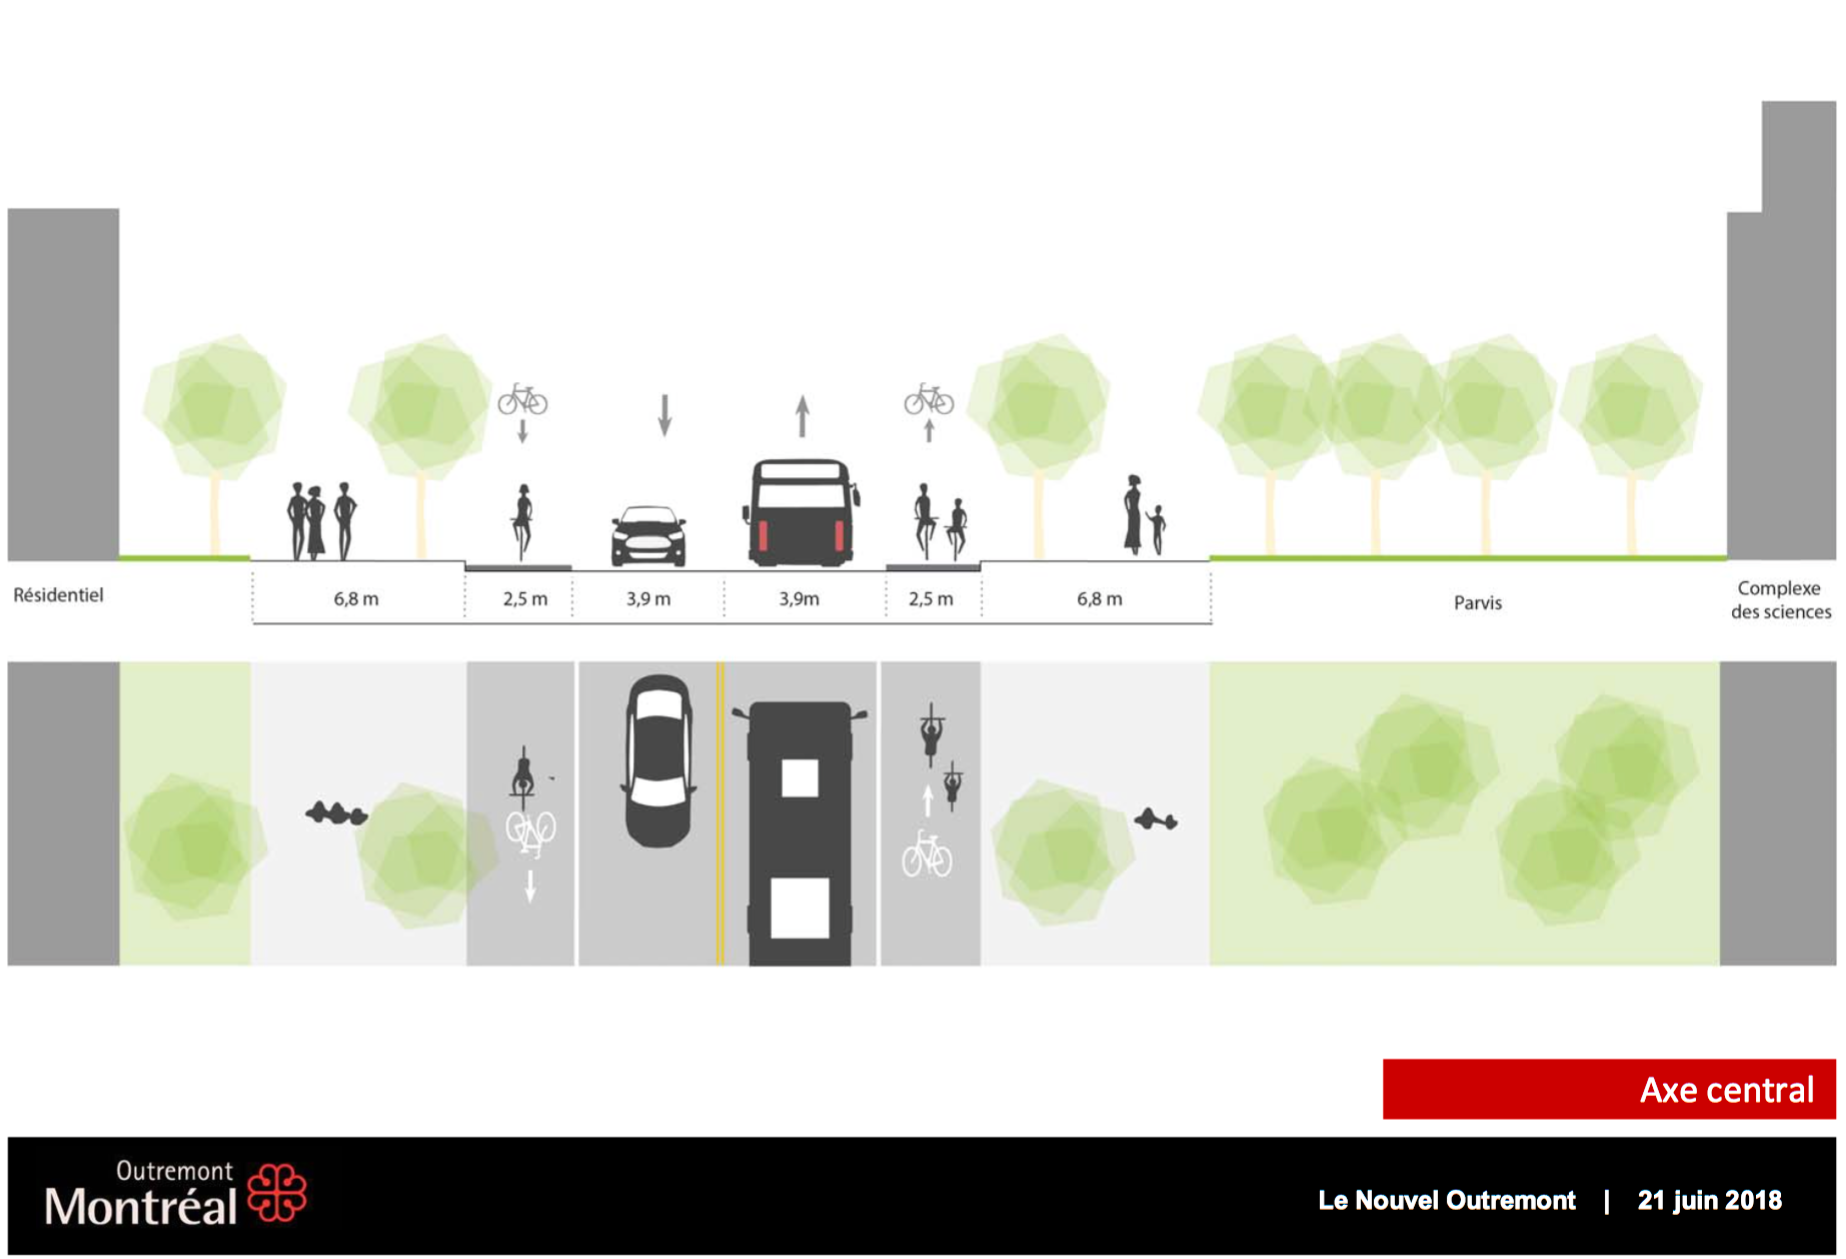  The City of Montréal inspired by Copenhagenize Design Co.’s infrastructure recommendations (Ville de Montréal). 